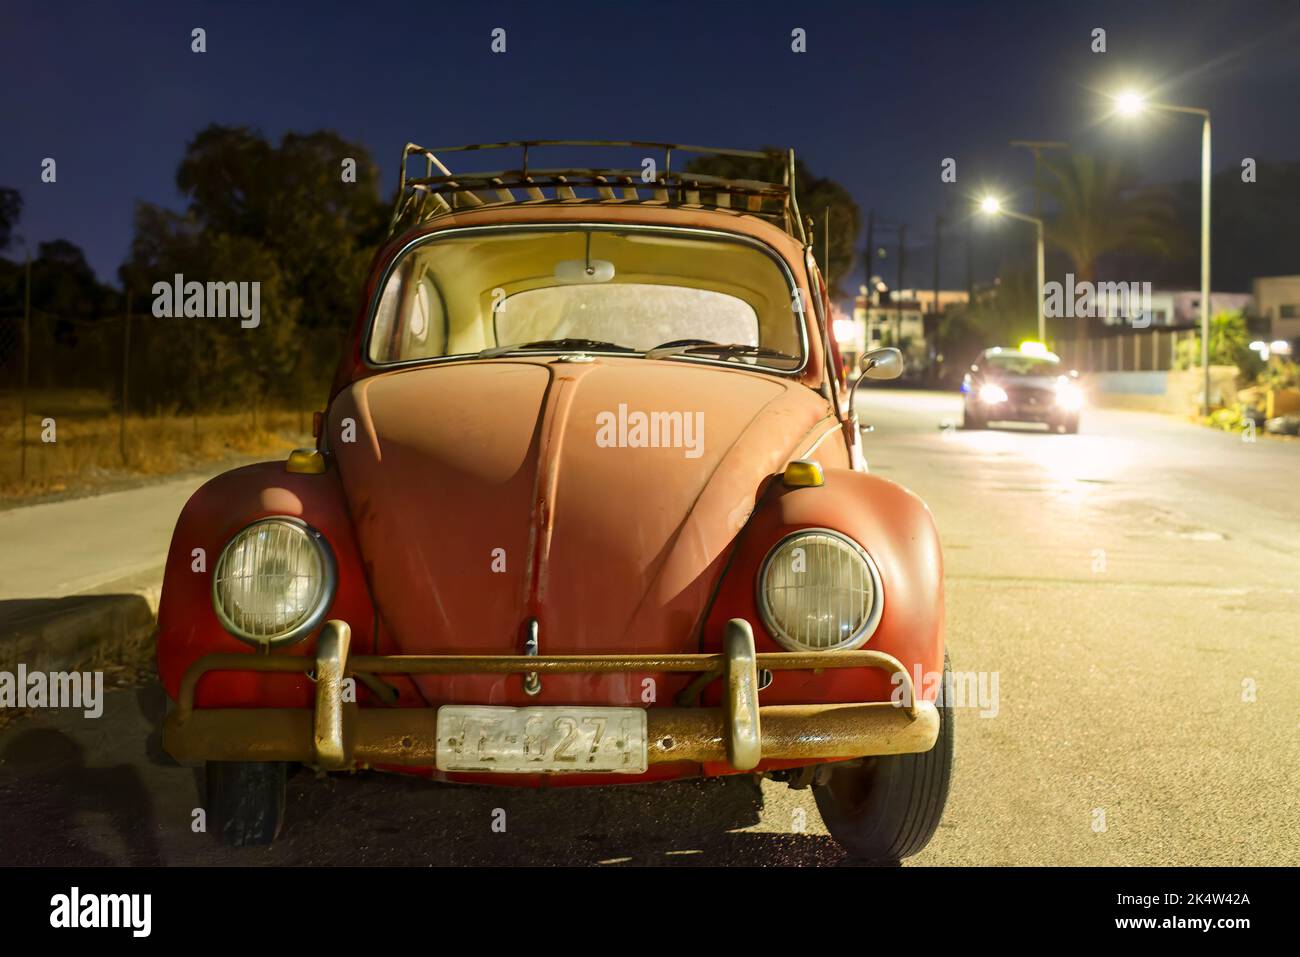 Un viejo Volkswagen o VW Escarabajo aparcó en el roadhouse por la noche. No hay nadie con el viejo coche clásico y está iluminado por las luces de las calles cercanas Foto de stock